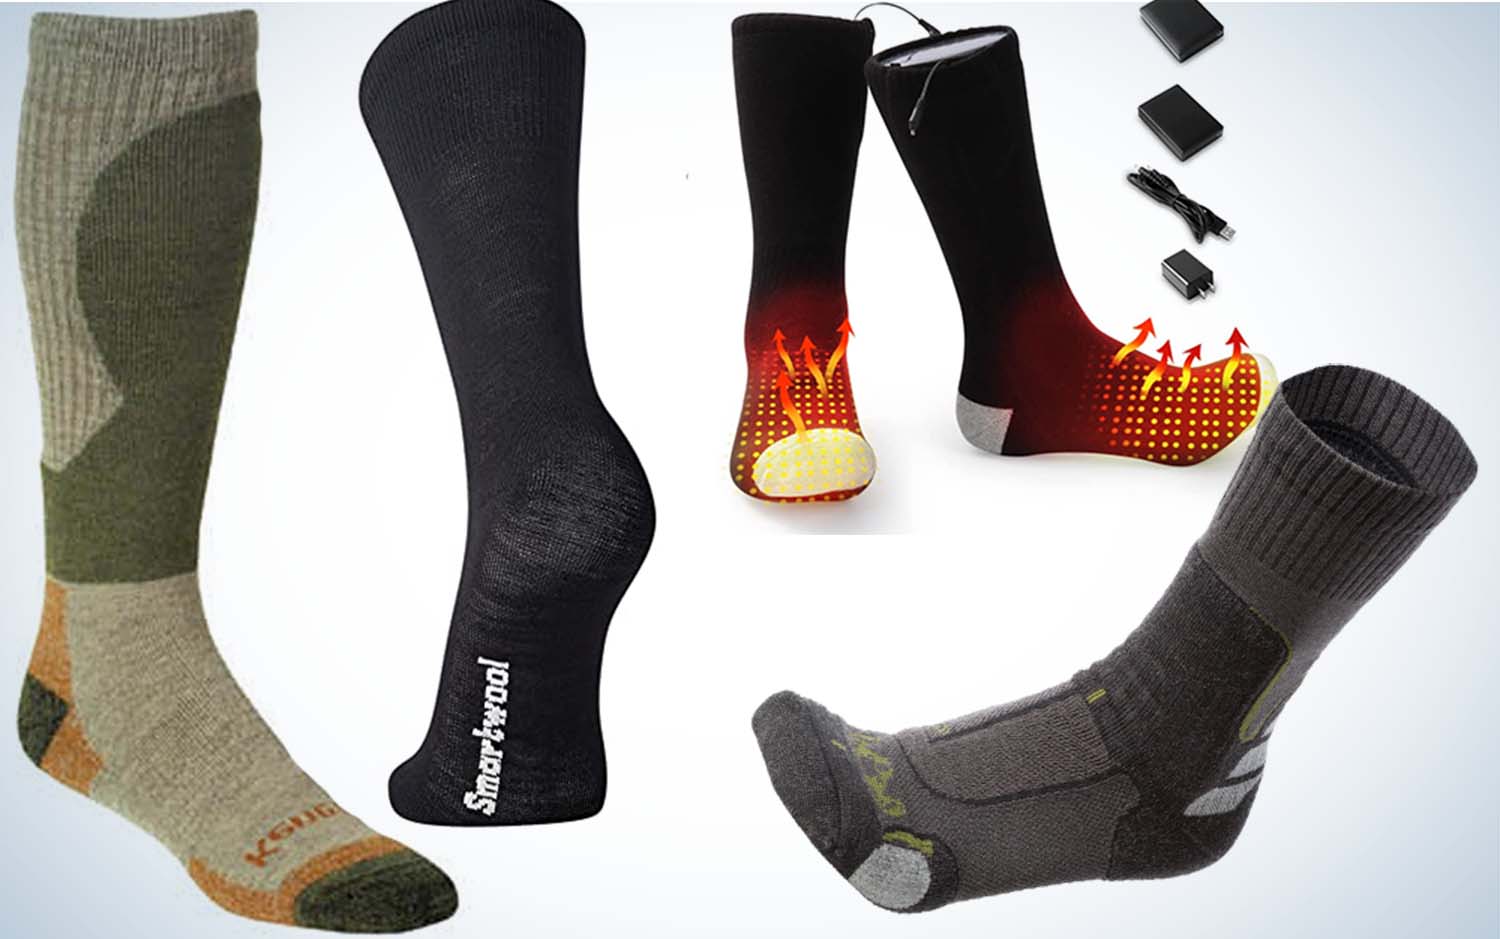 MERIWOOL 3 Pairs Merino Wool Blend Socks - Choose Your Size, Socks -   Canada